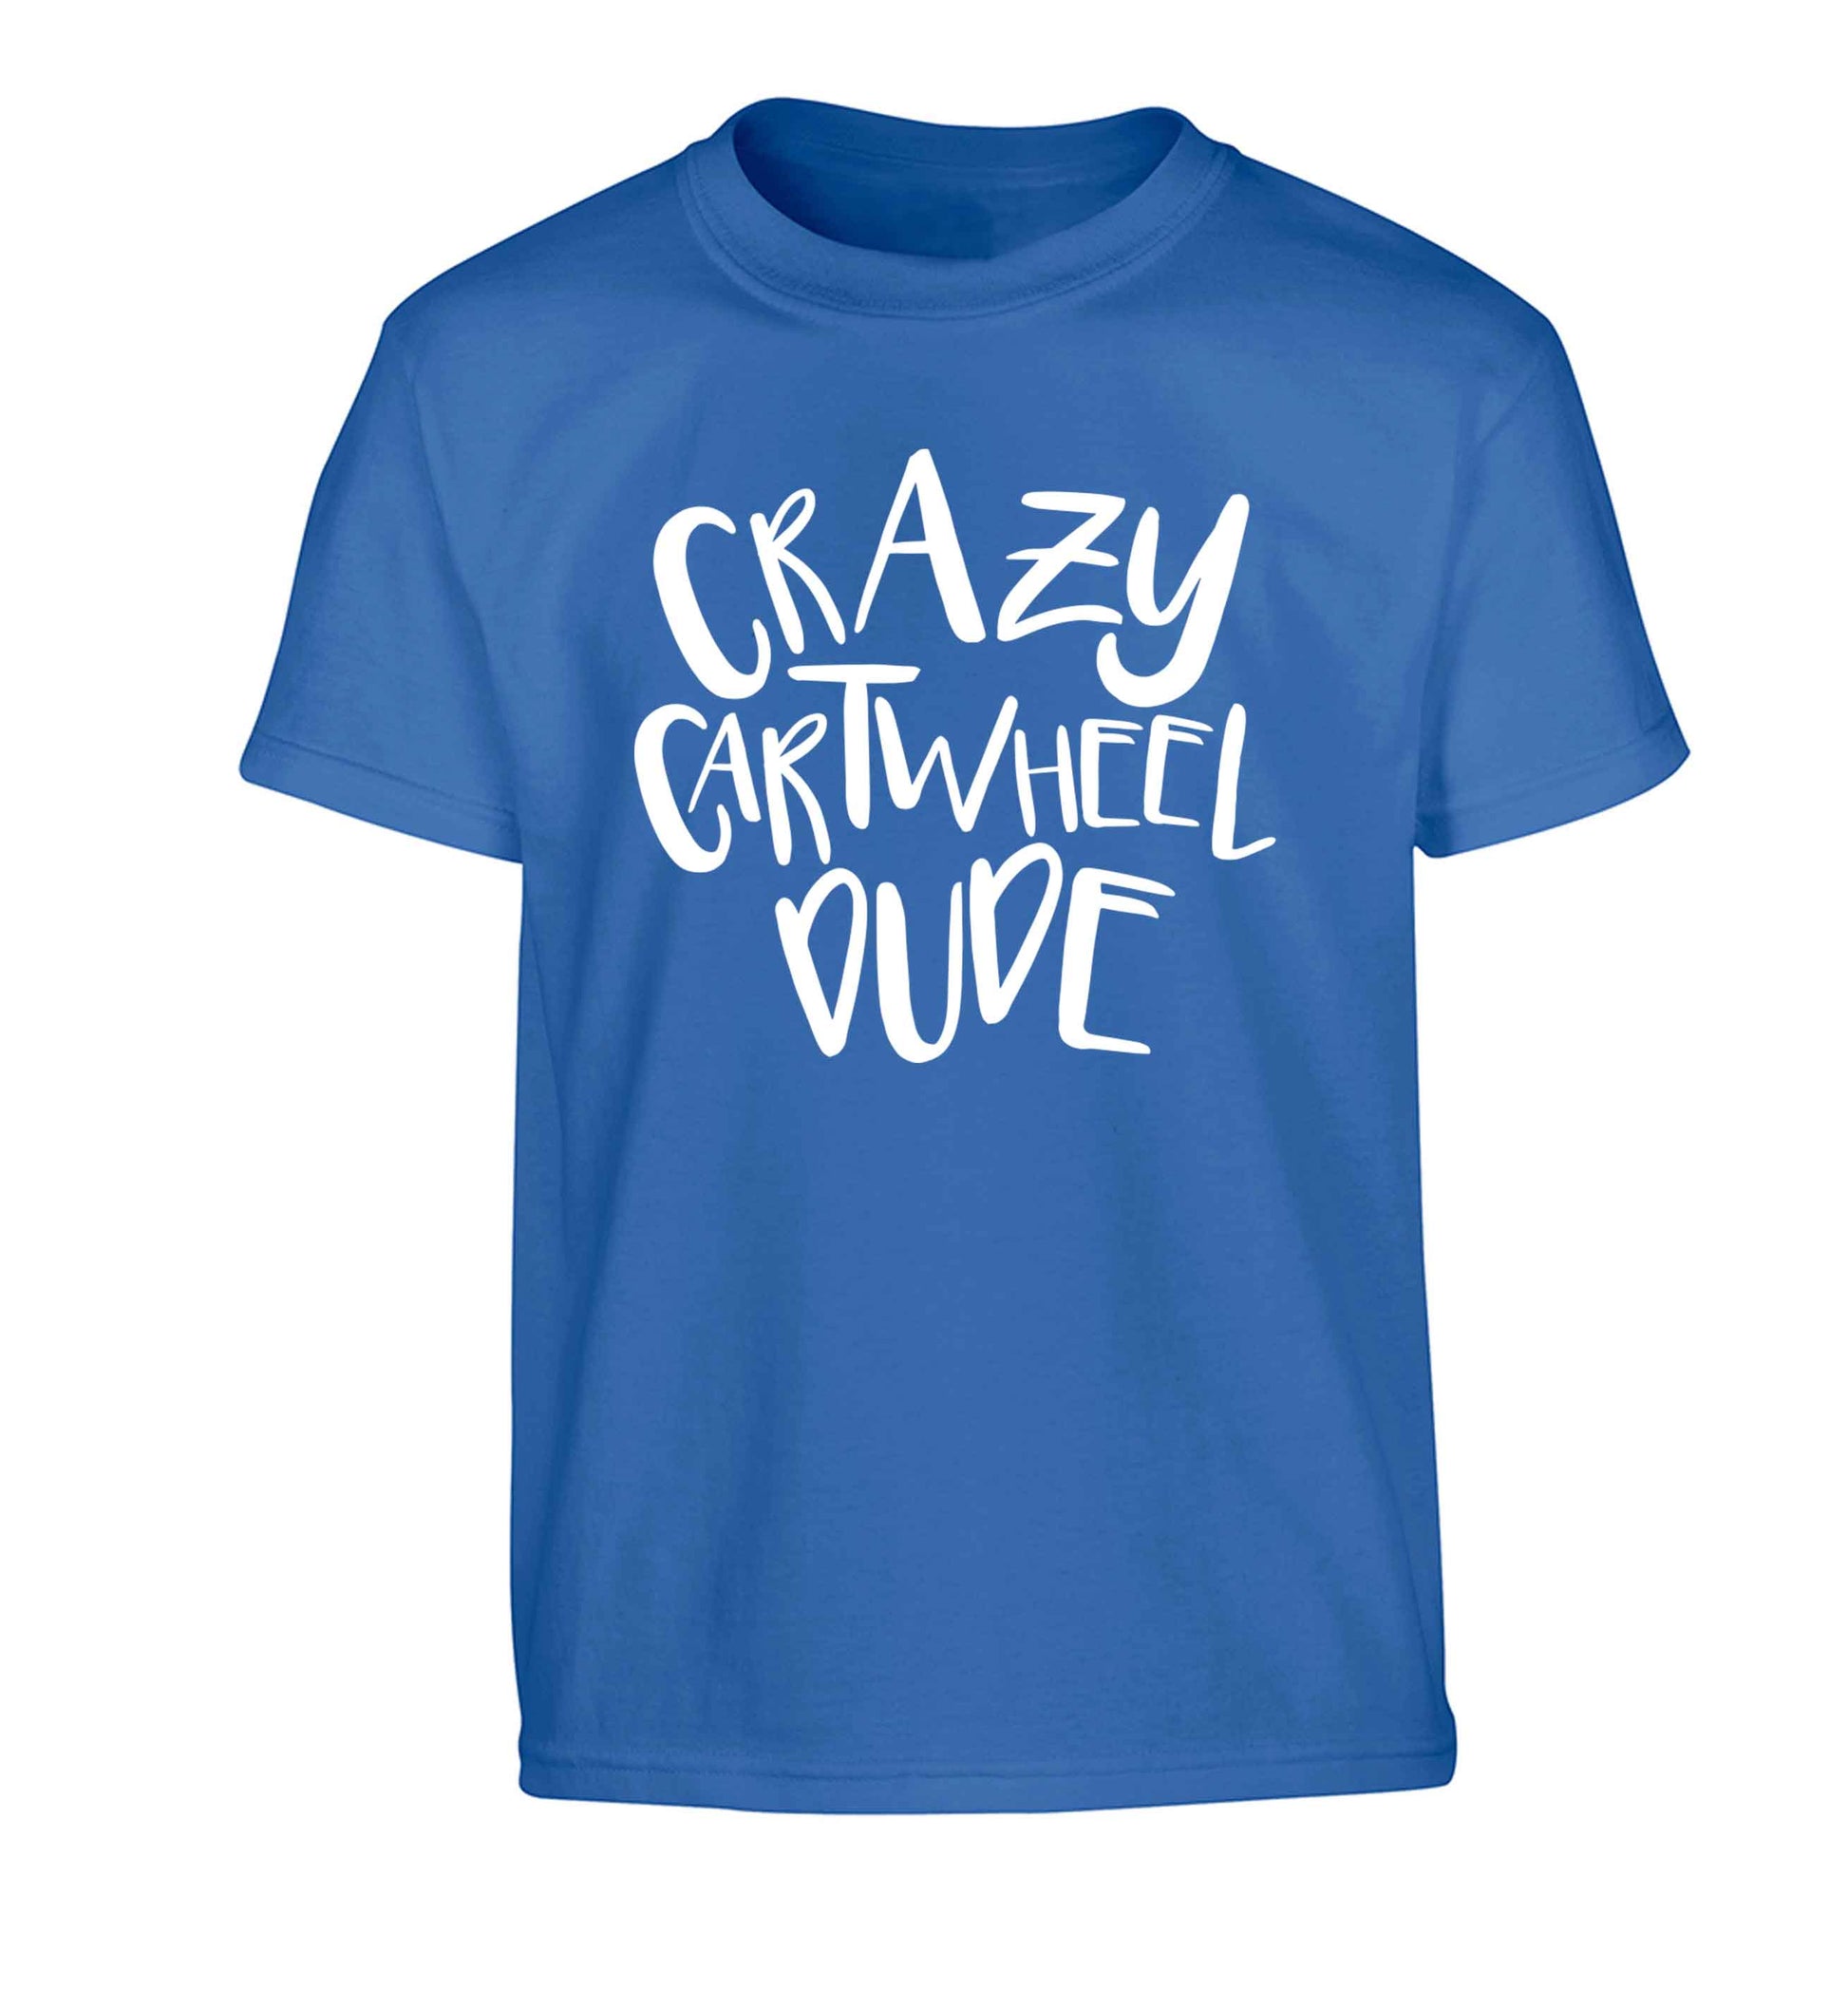 Crazy cartwheel dude Children's blue Tshirt 12-13 Years